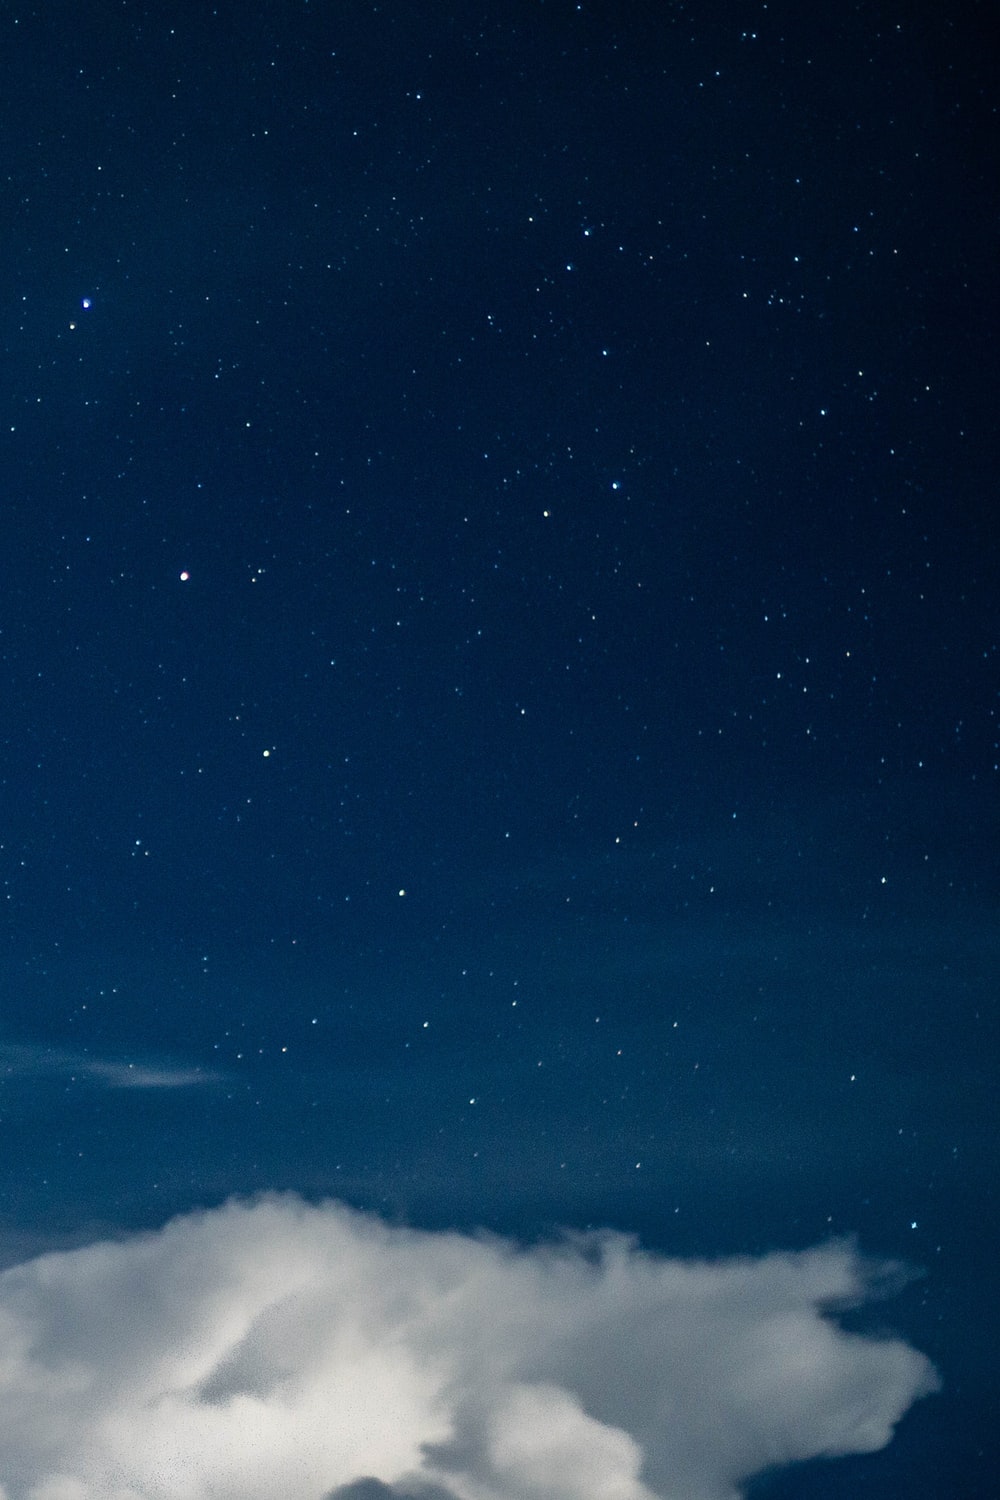 Bầu trời đêm với đám mây là sự kết hợp tuyệt vời giữa sự bình yên và tình cảm. Với bộ sưu tập hình nền bầu trời đêm đầy đủ trên WallpaperSafari, bạn sẽ có cơ hội được khám phá những bức ảnh đẹp mắt với sắc màu nổi bật và chi tiết tinh tế. Tải về và trải nghiệm ngay!